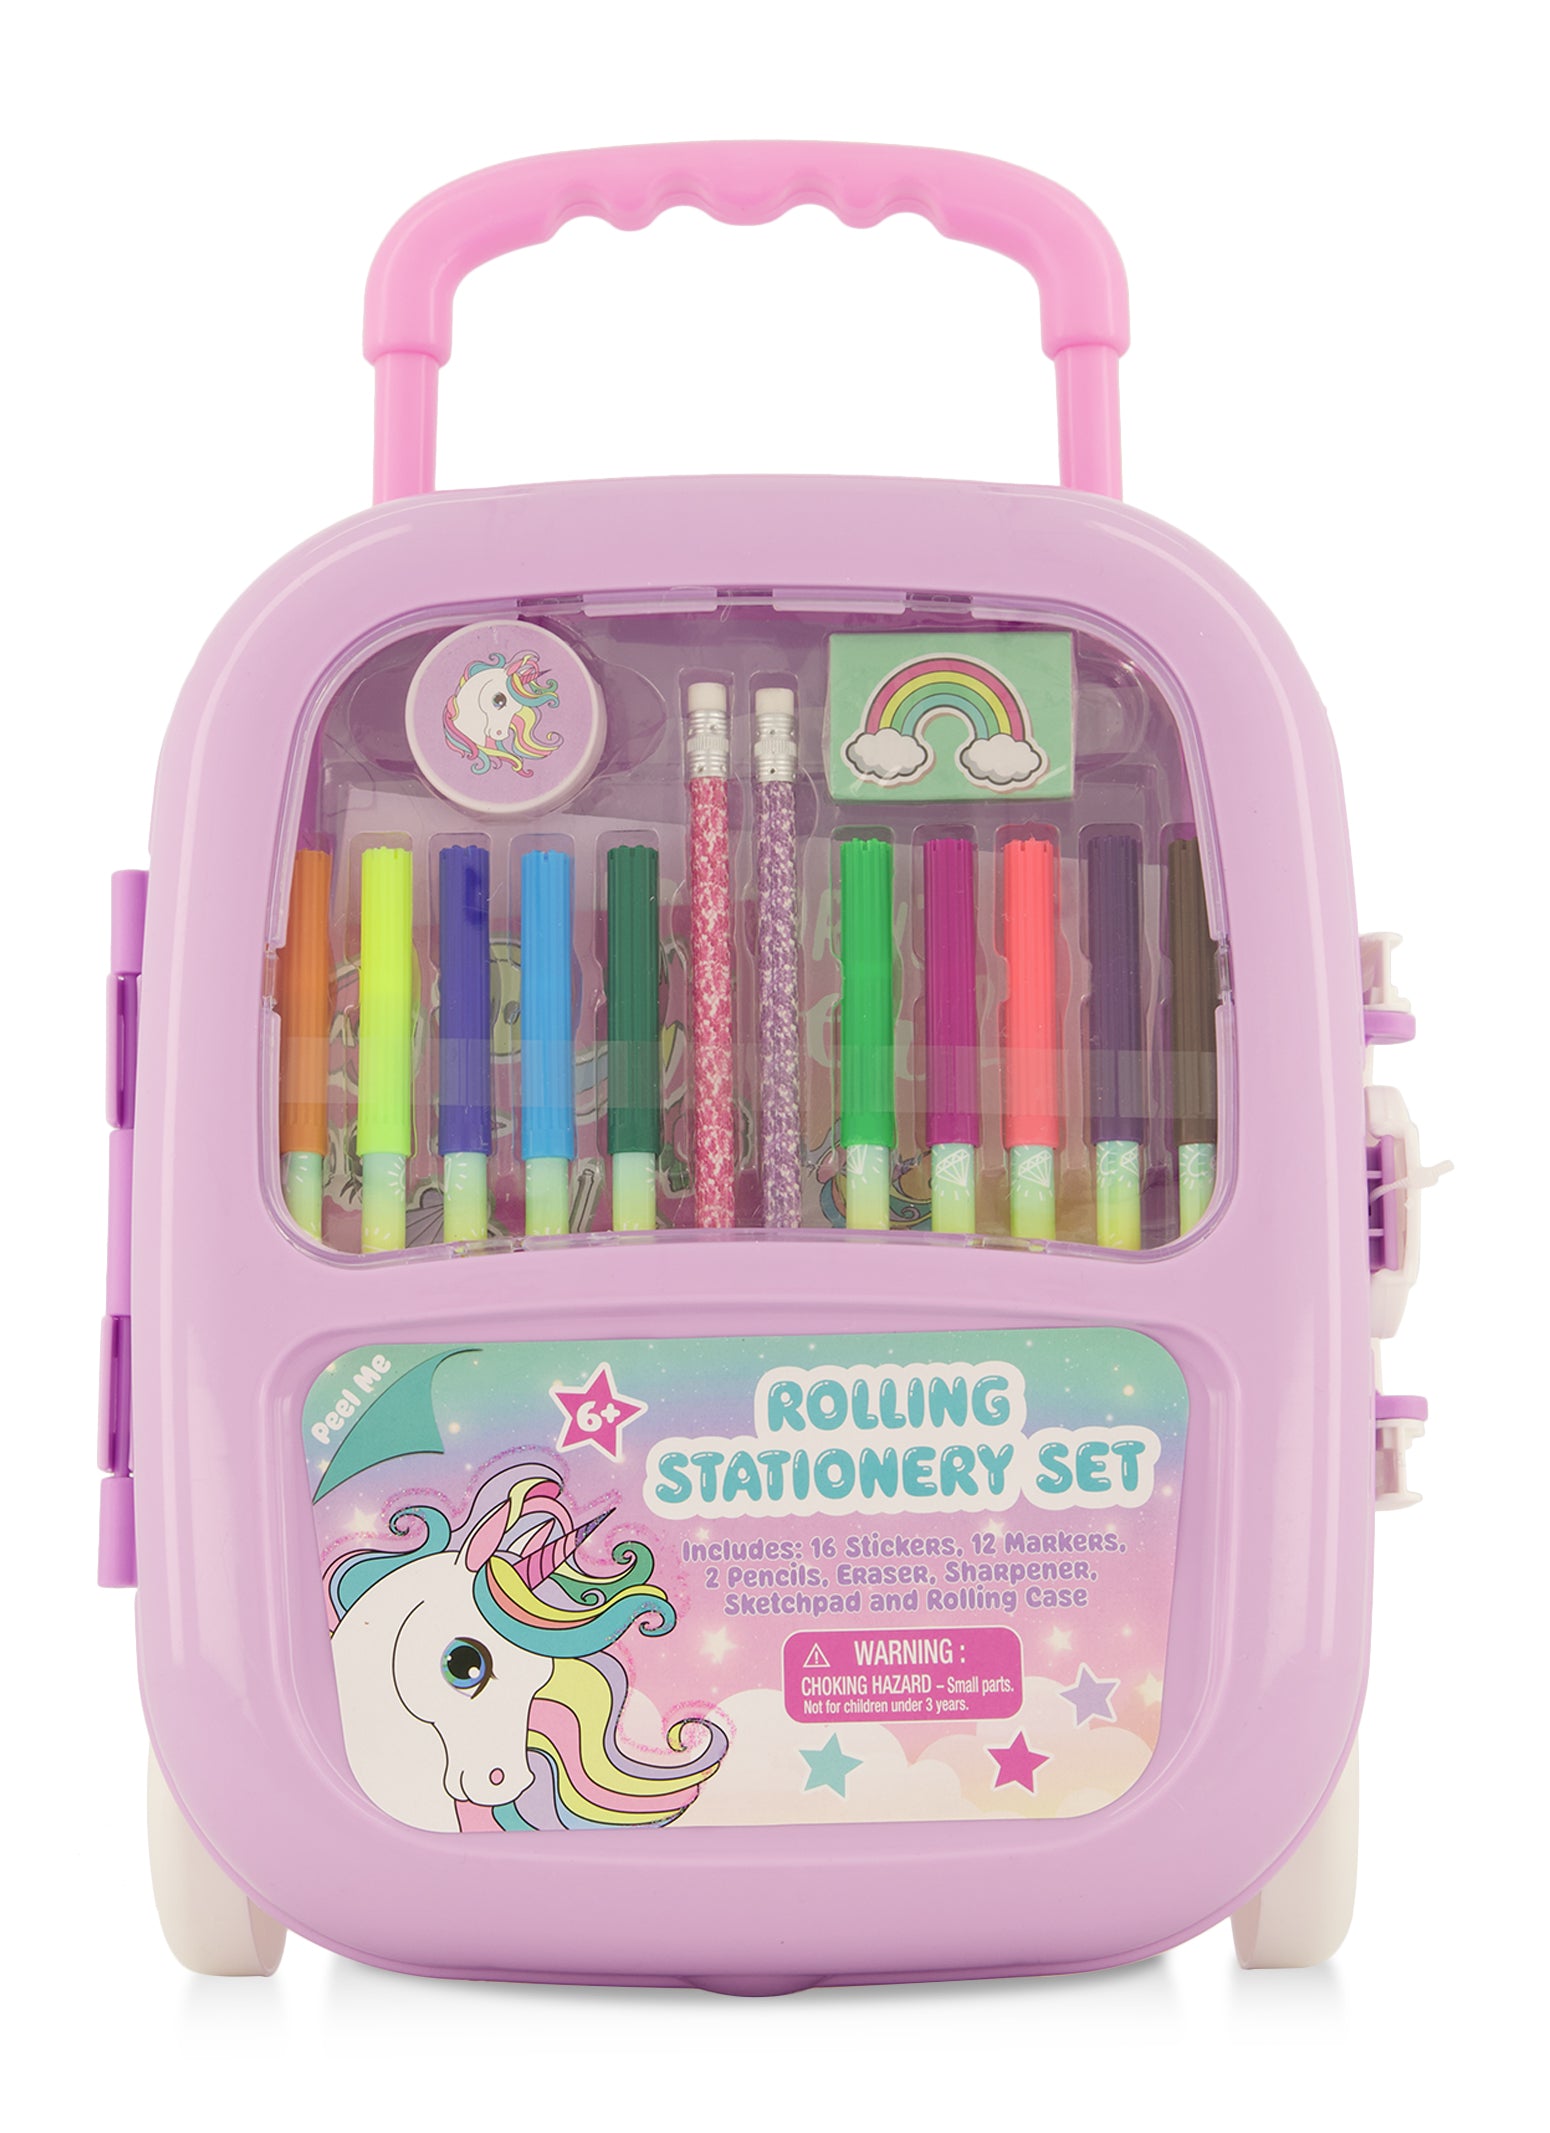 unboxing unicorn stationery set #stationery #unicorn #stationeryunboxi